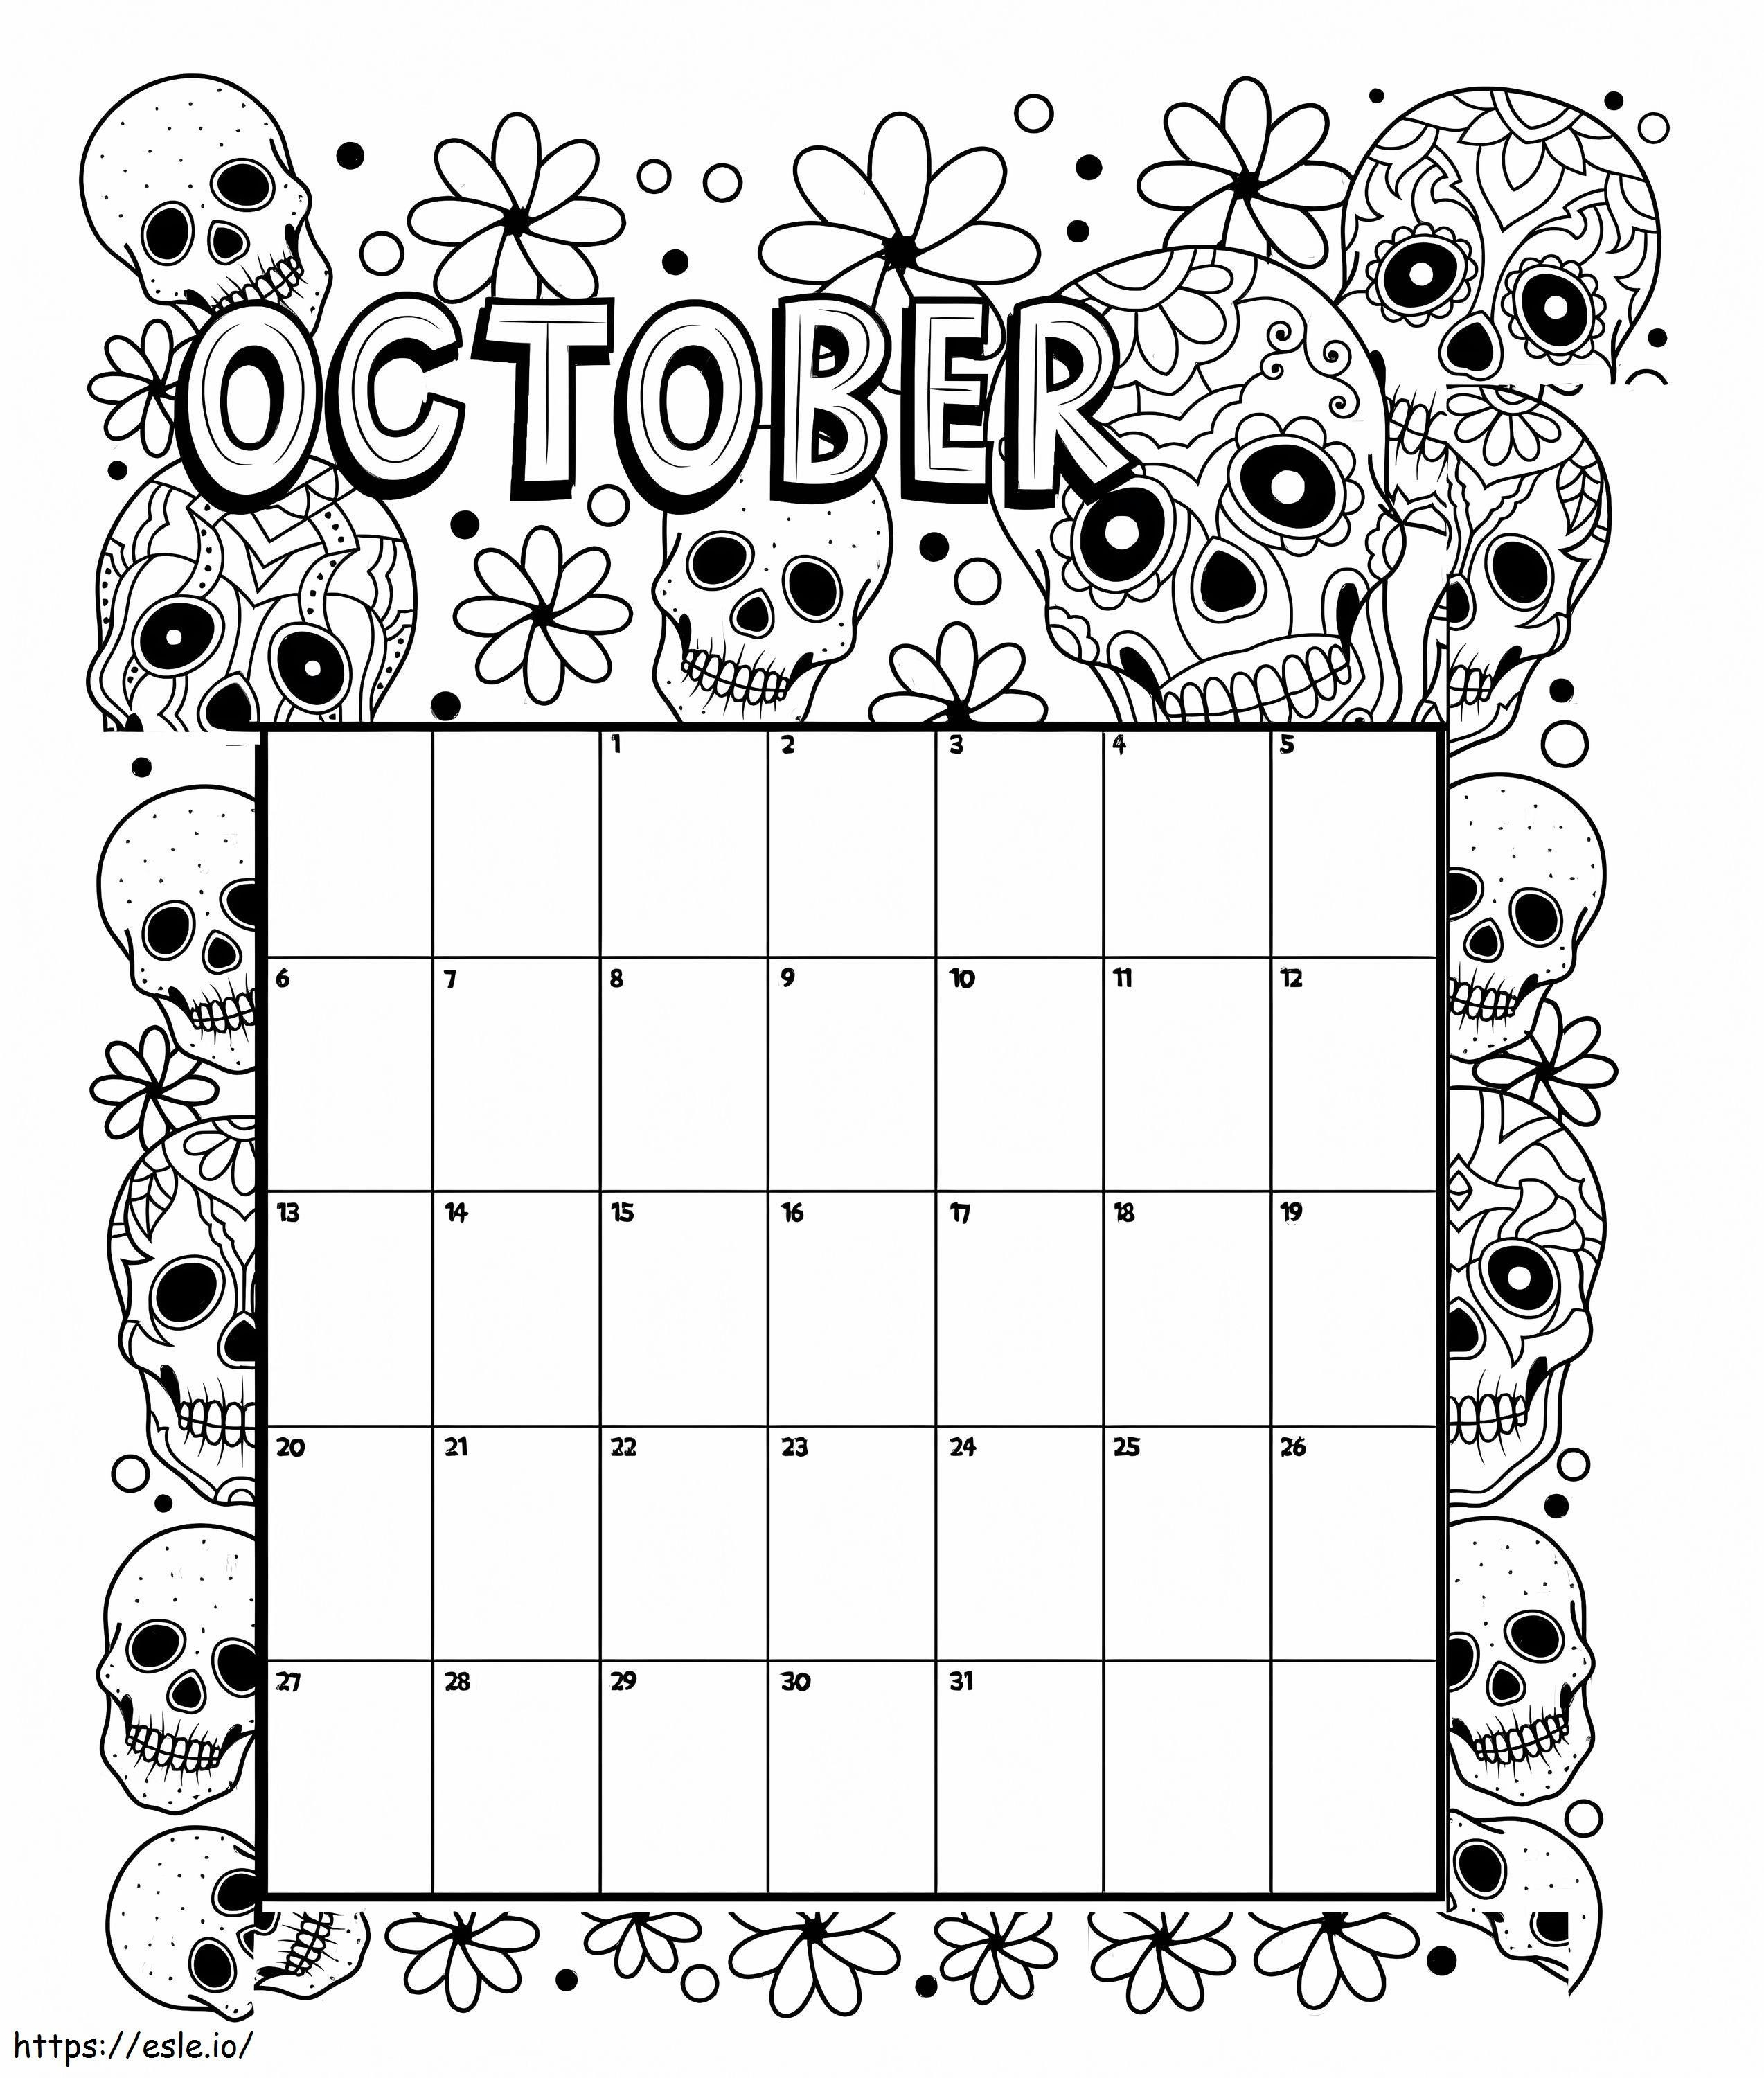 Calendario di Halloween di ottobre da colorare